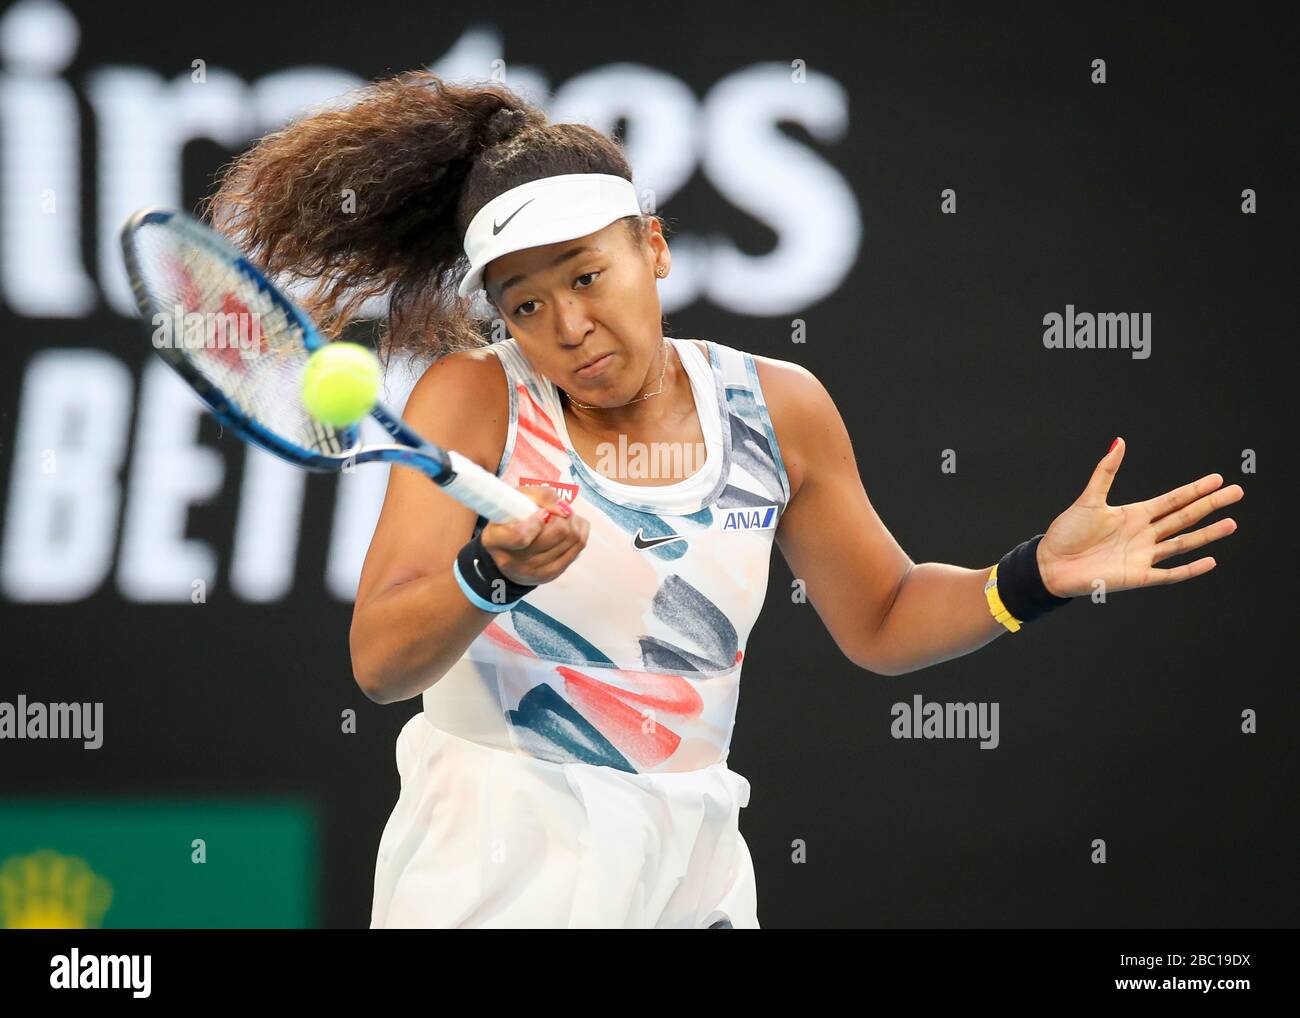 Die japanische Tennisspielerin Naomi Osaka spielt beim Tennisturnier Australian Open 2020, Melbourne Park, Melbourne, Victoria, Australien eine hohe Vorhand Stockfoto